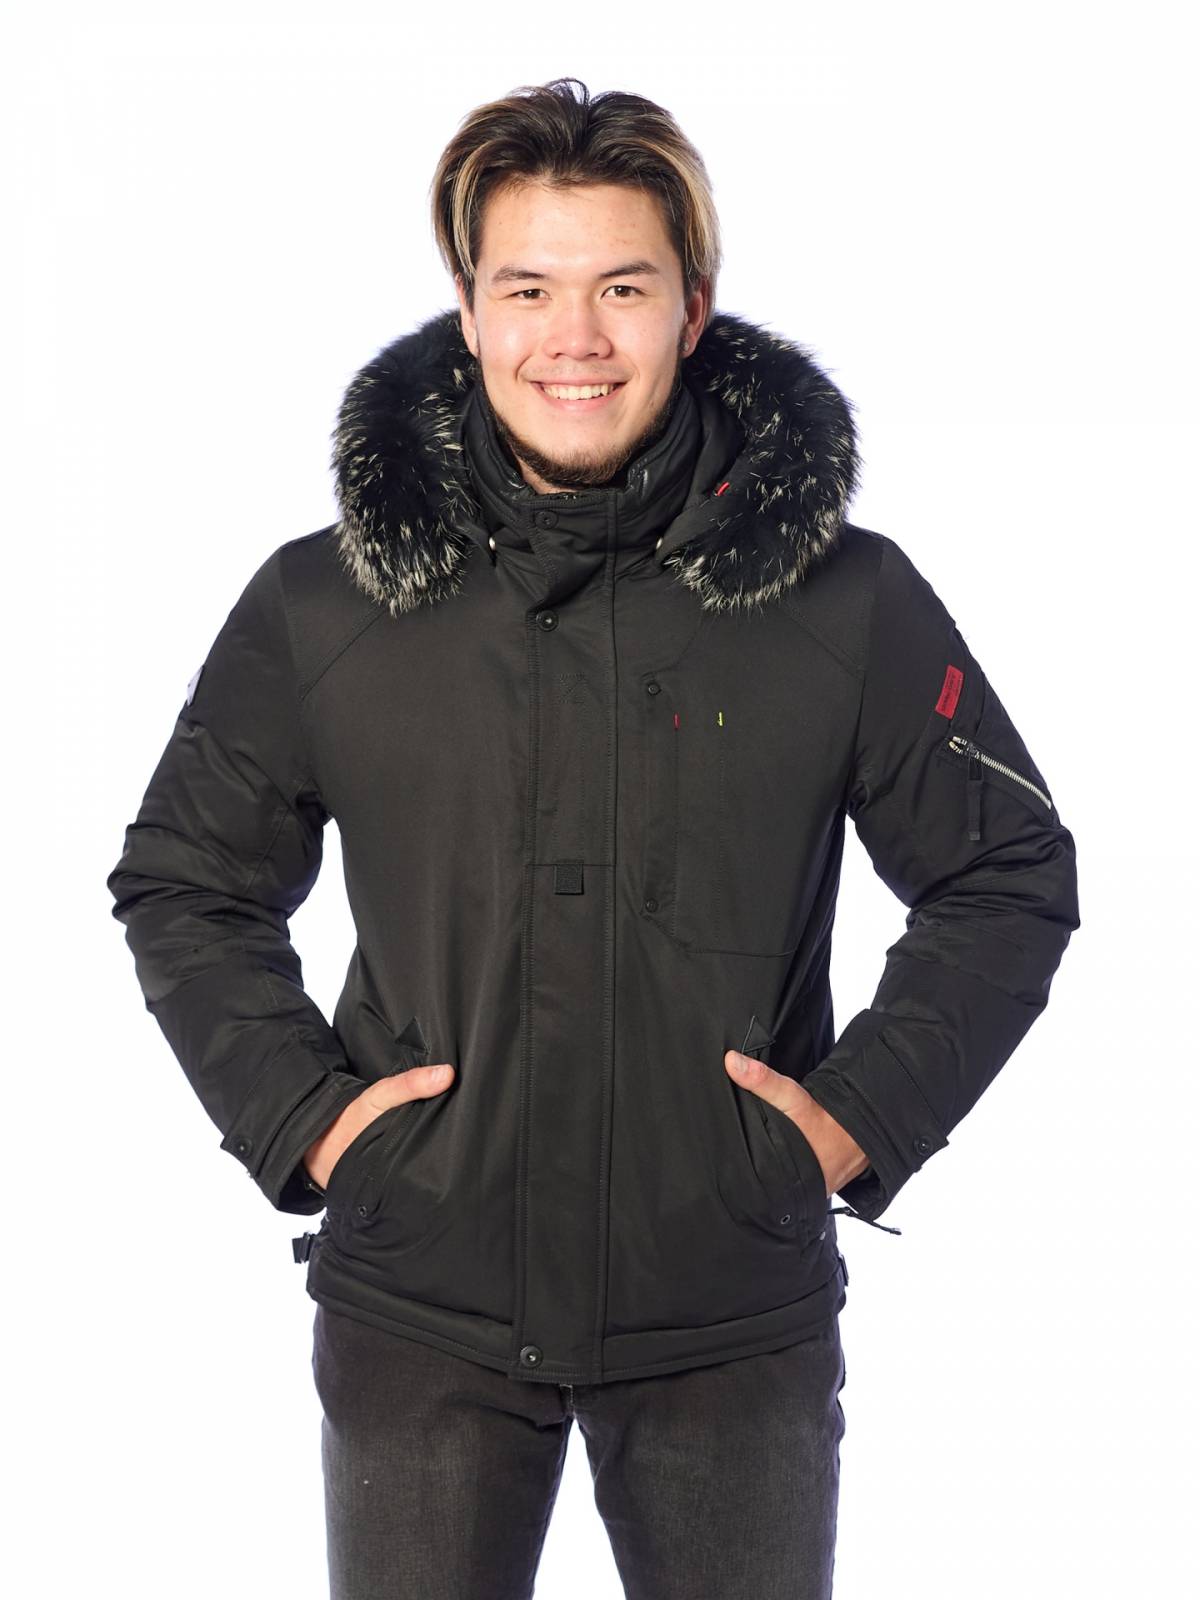 Зимняя куртка мужская Shark Force 4191 черная 56 RU